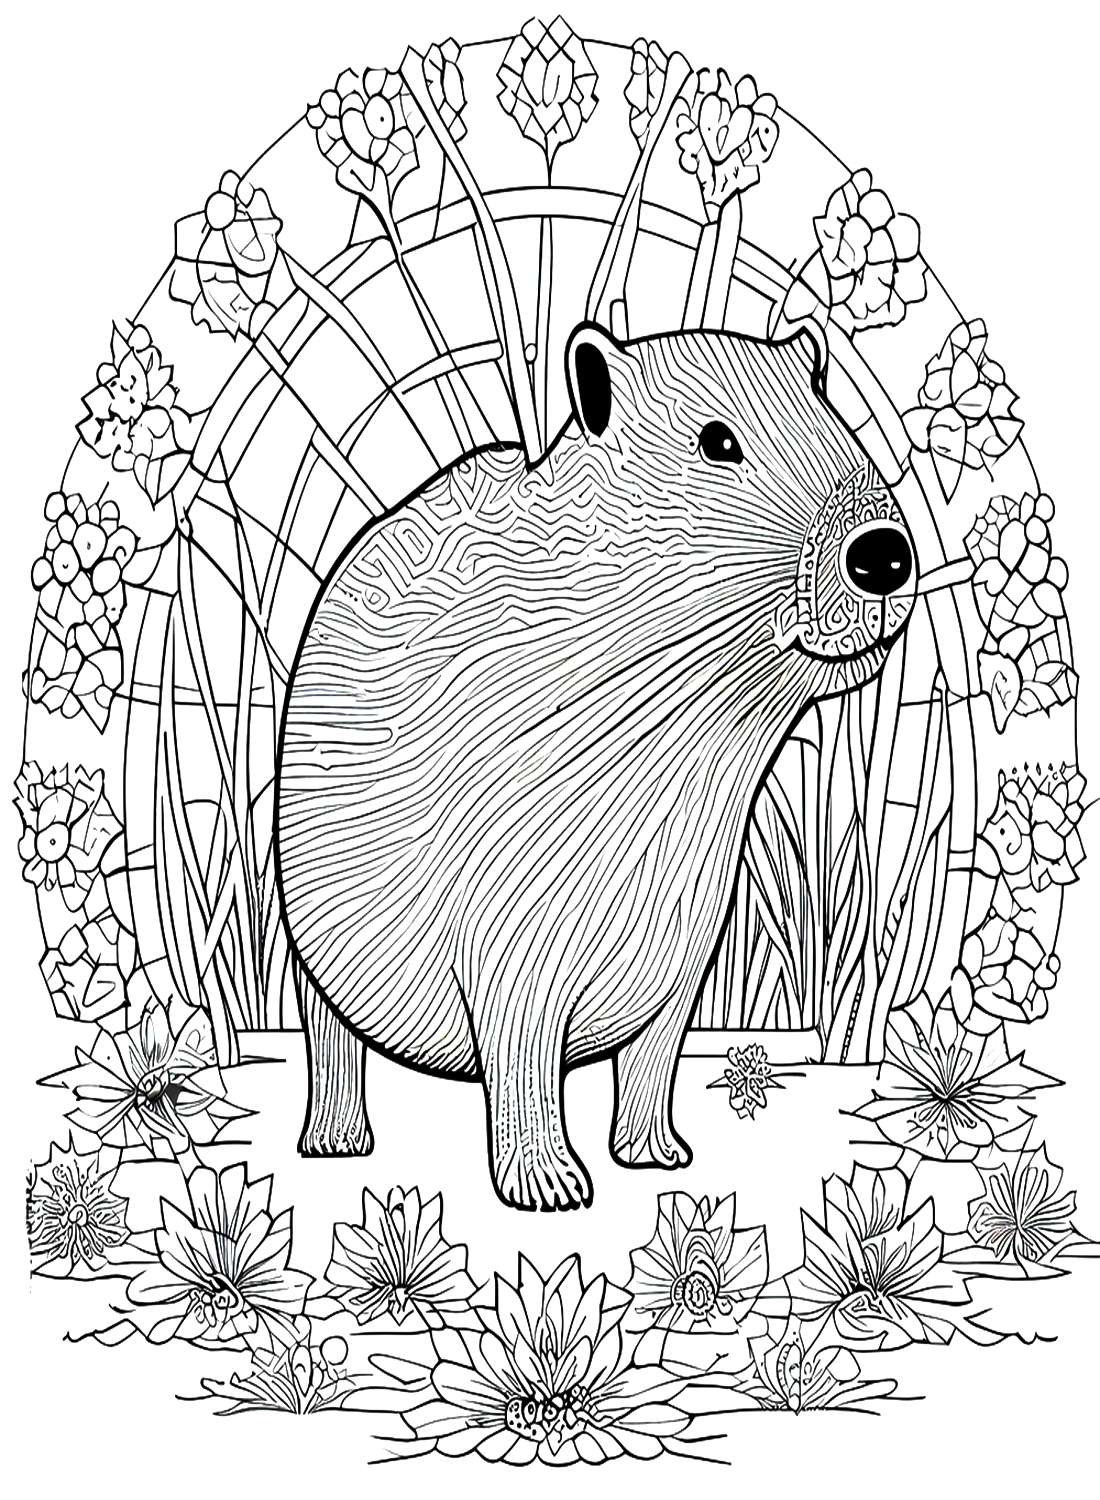 Capybara In Zentangle Style from Capybara